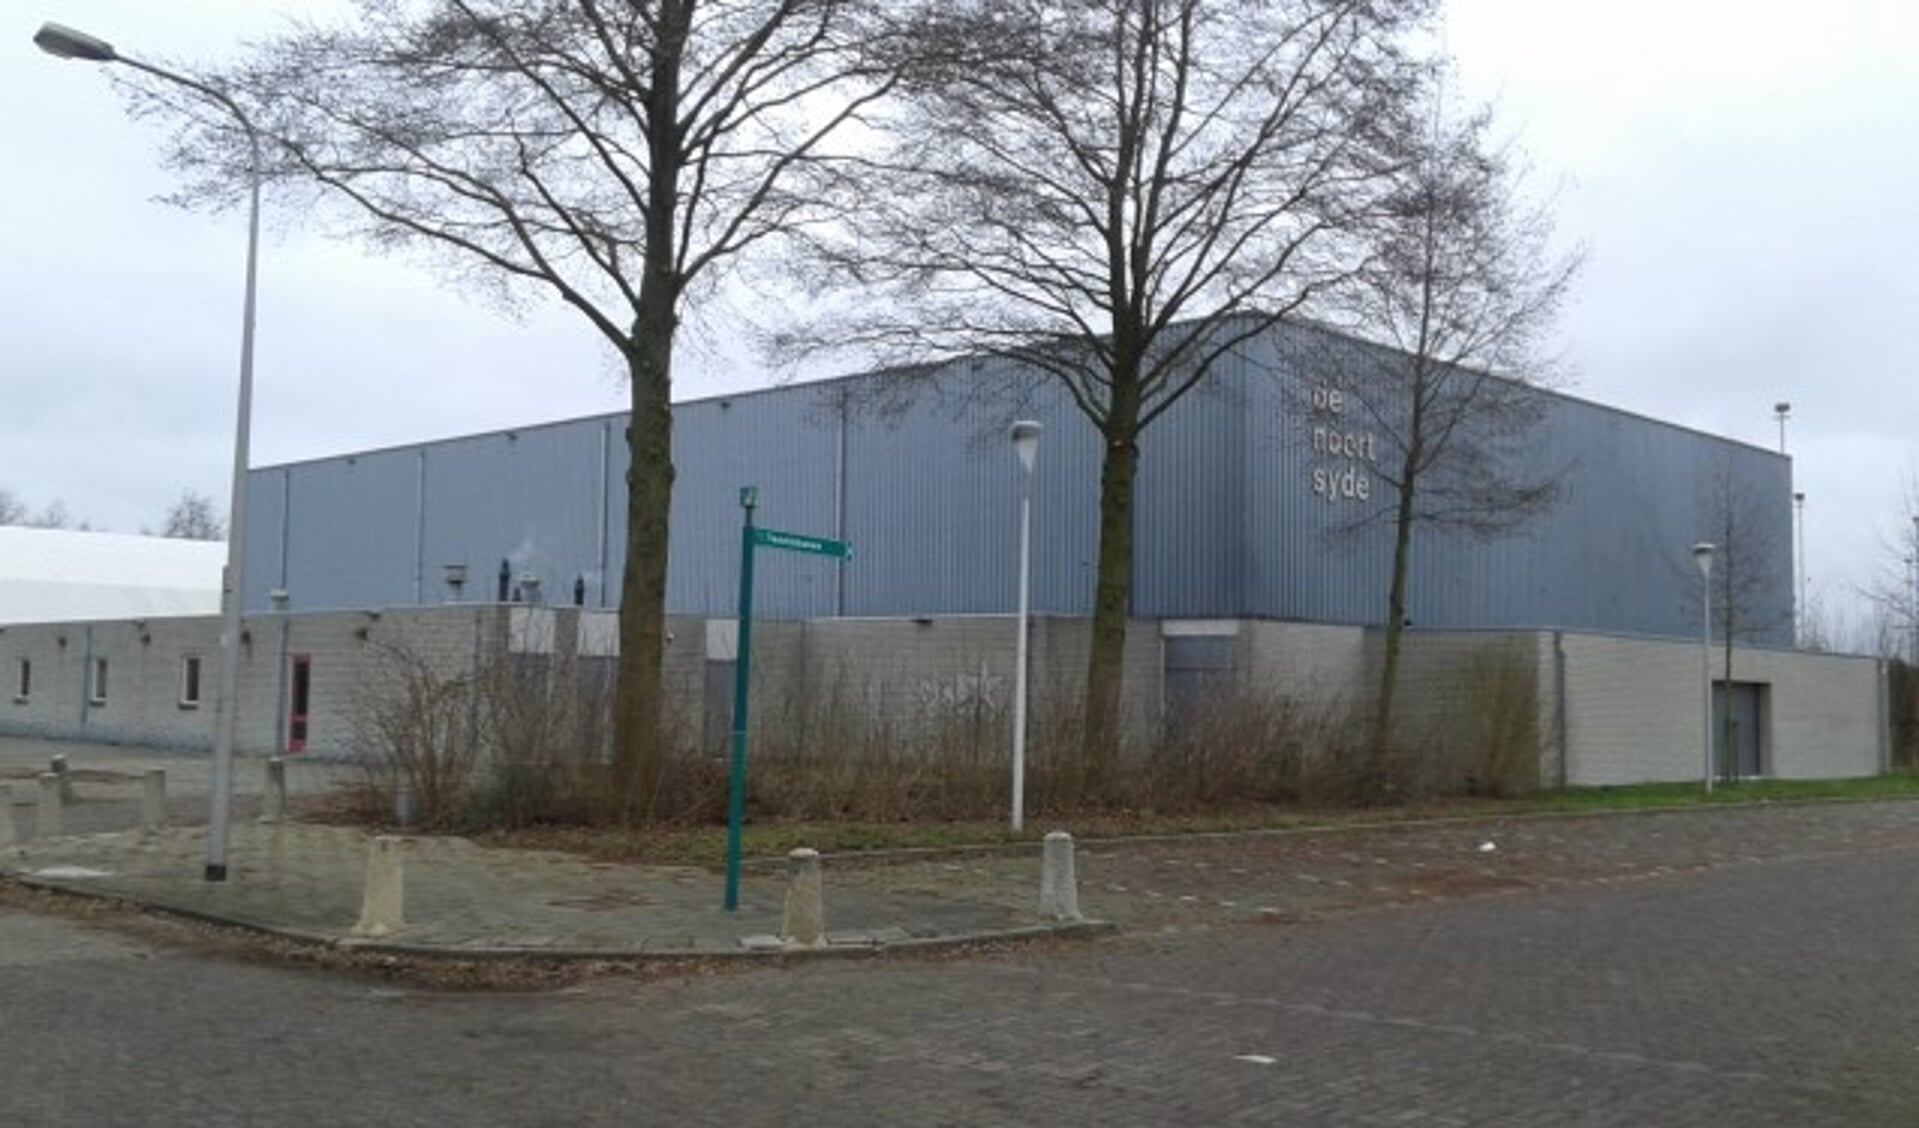 De gemeenteraad wil toch een zwembad in de buurt van sporthal De Noort Syde. FOTO: gemeente Oudewater